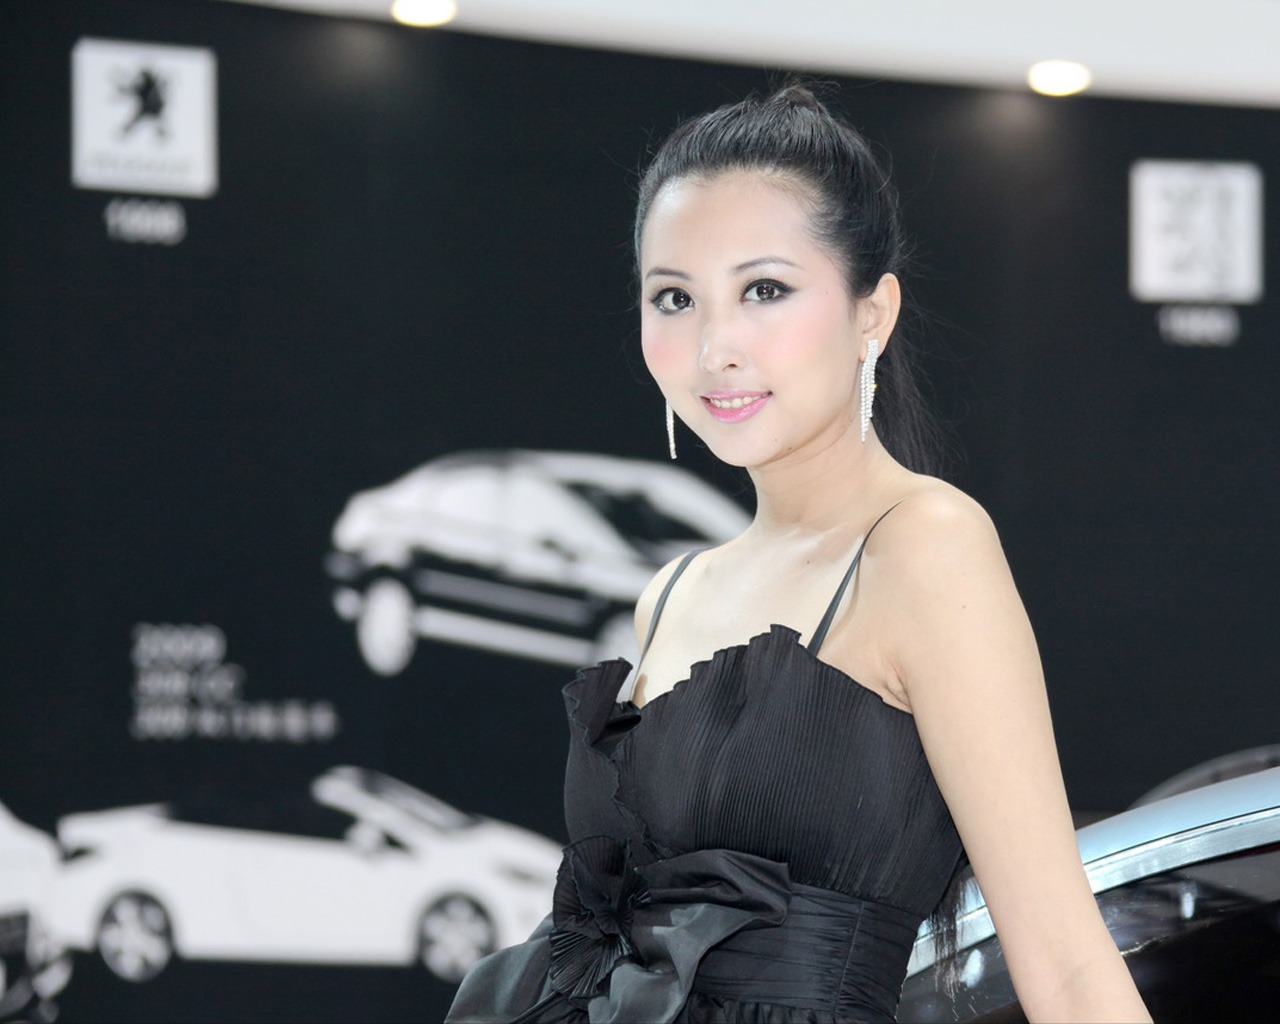 2010-4-24 北京国际车展 (林泉清韵作品)7 - 1280x1024